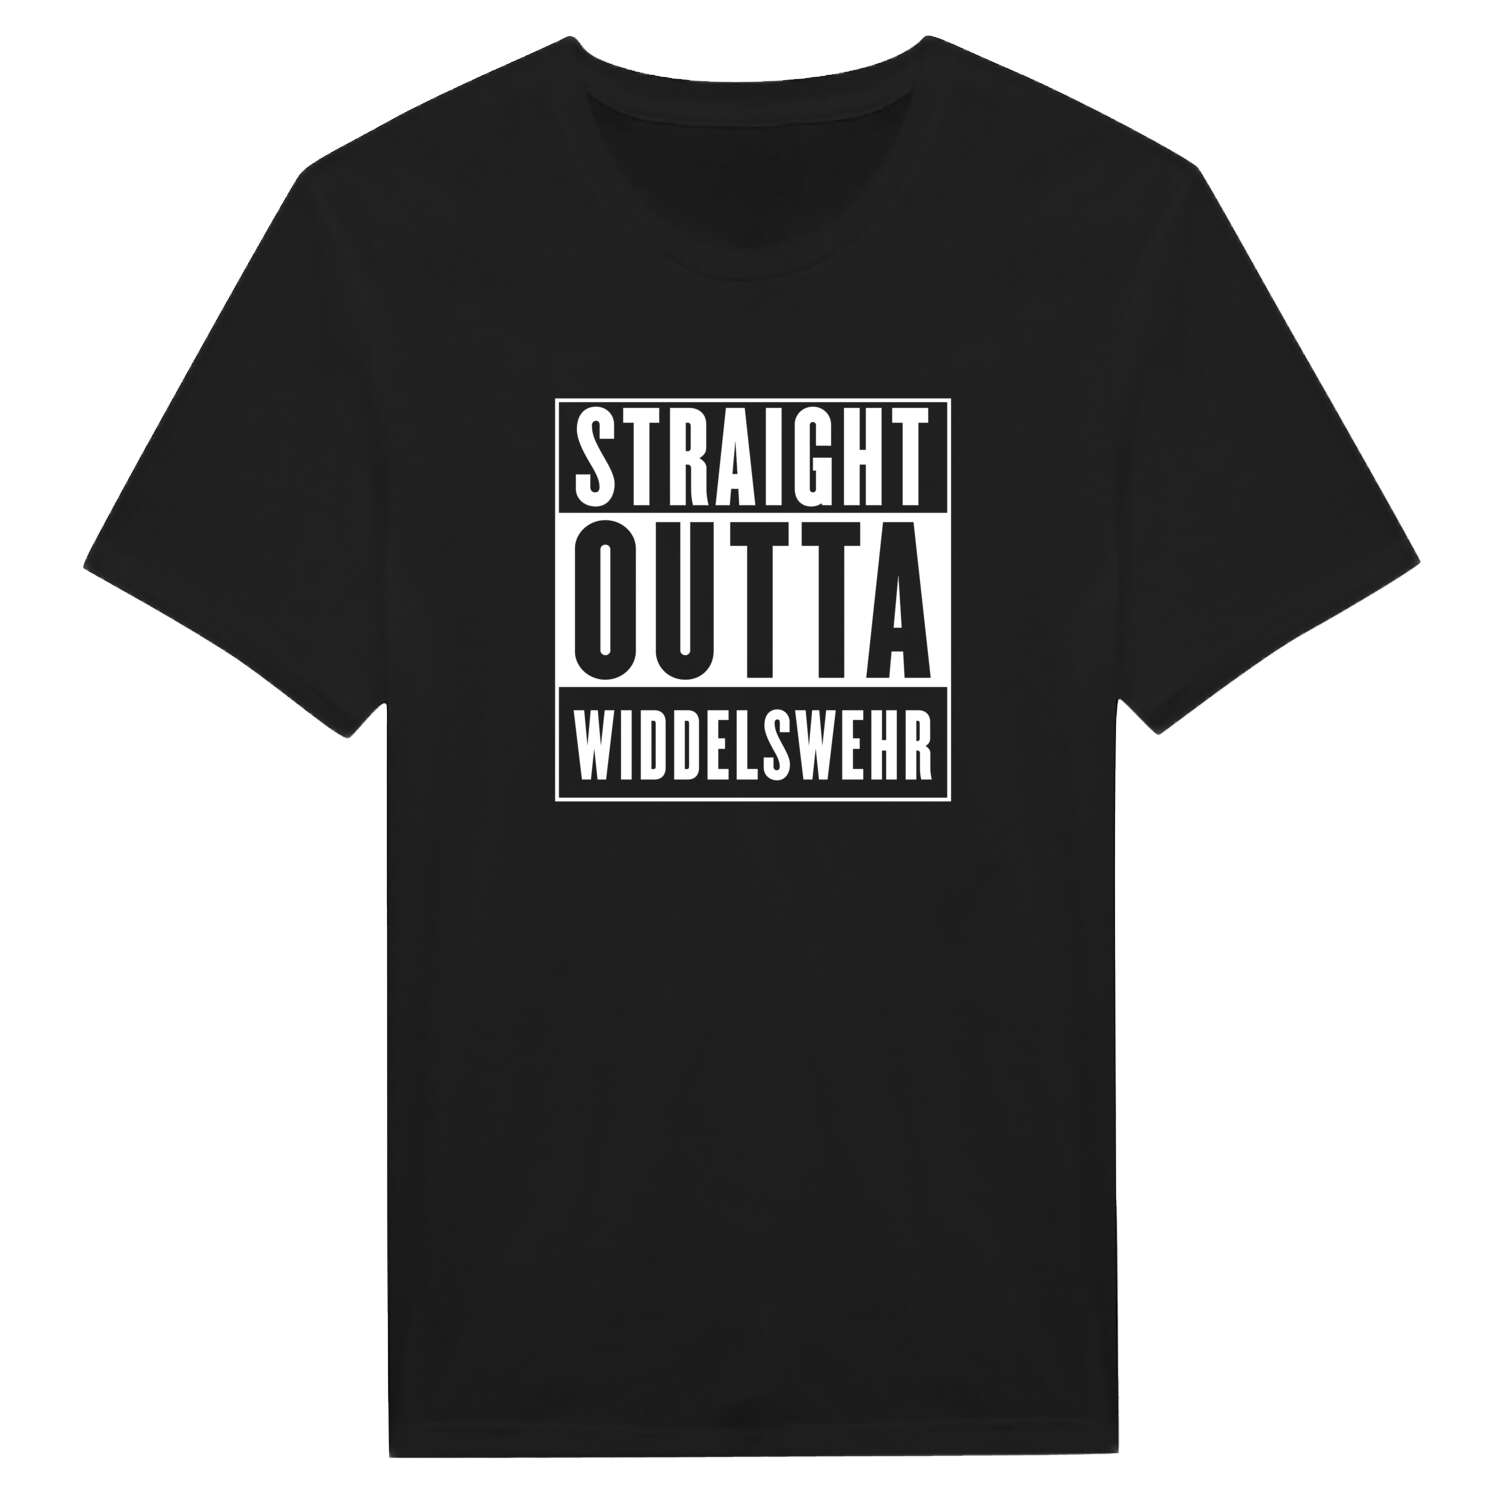 Widdelswehr T-Shirt »Straight Outta«